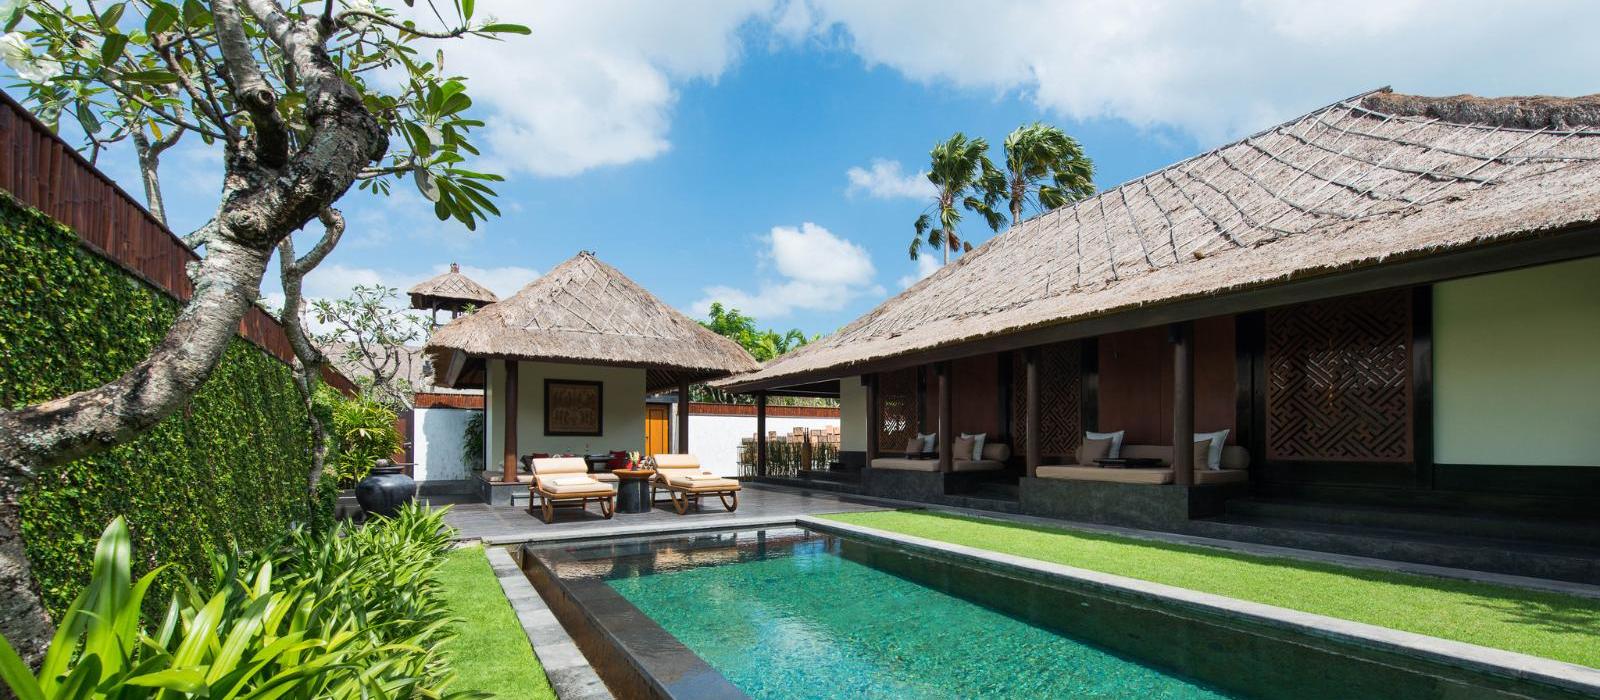 巴厘岛水明漾乐吉安度假酒店(The Legian Seminyak, Bali) 单卧套房泳池图片  www.lhw.cn